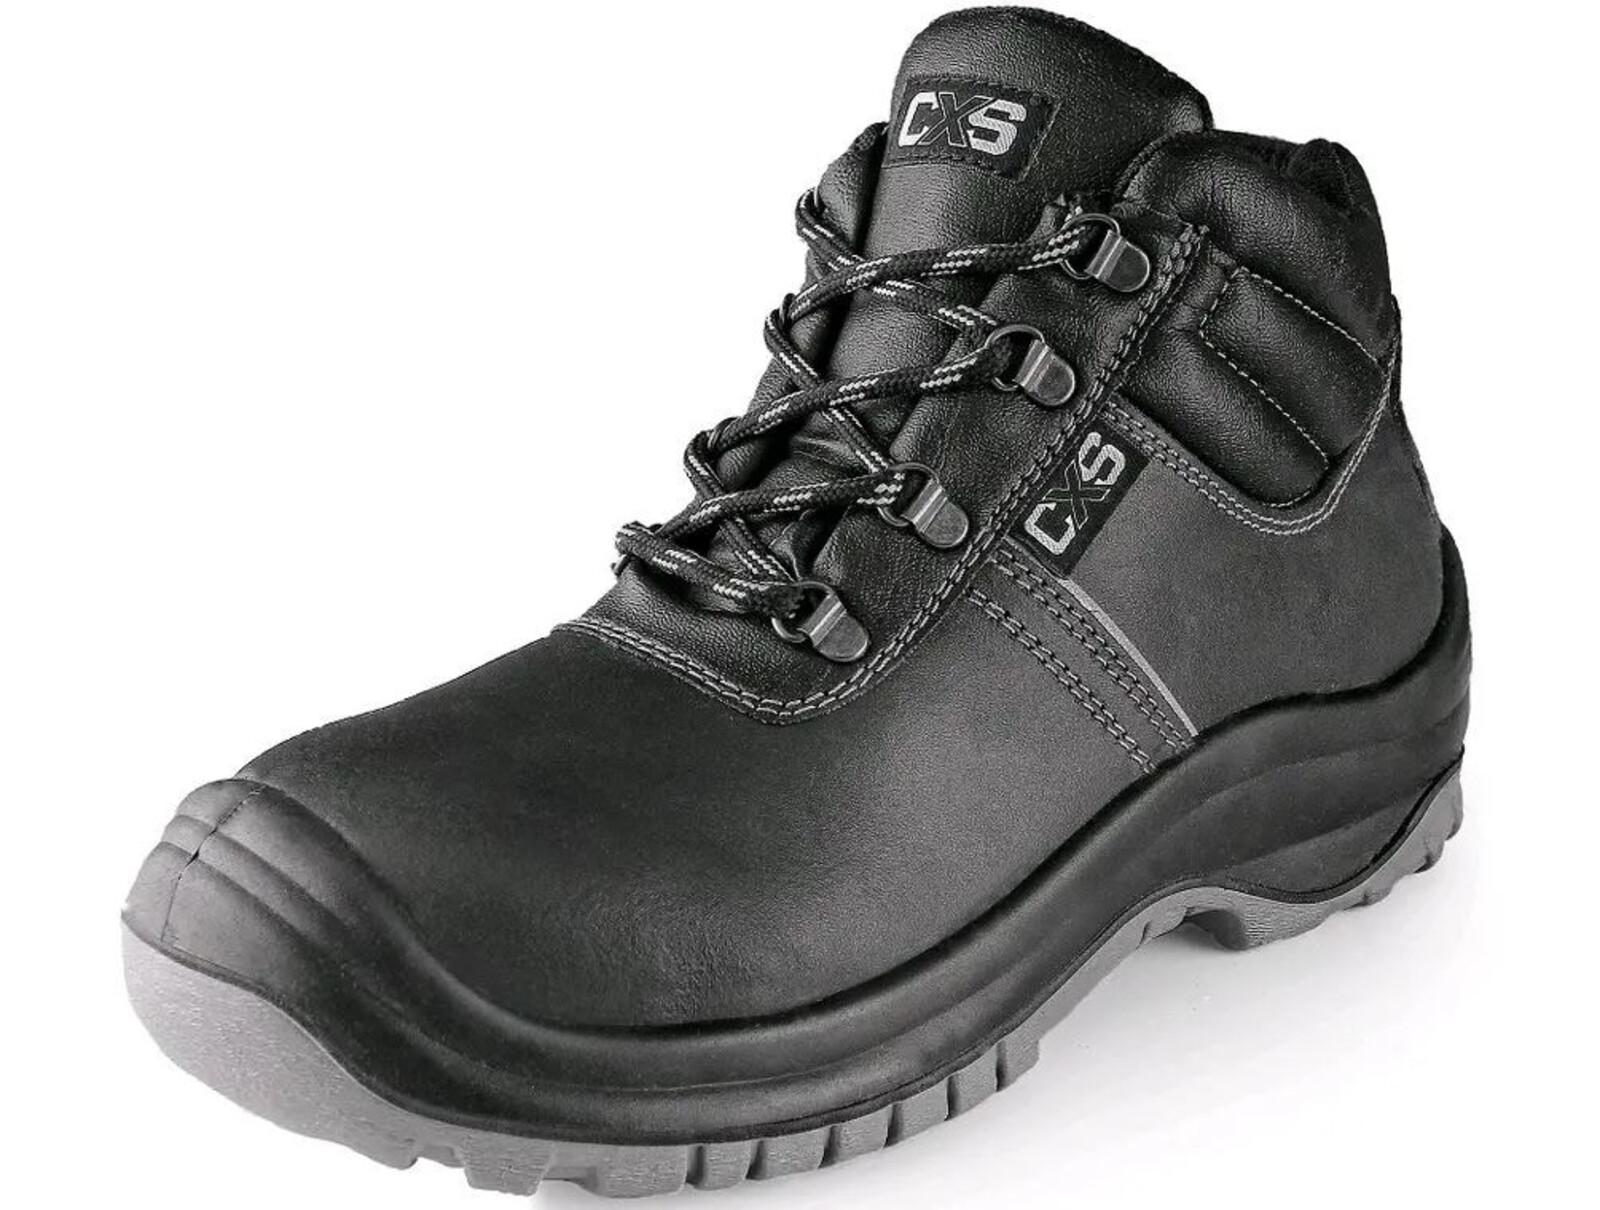 Bezpečnostná členková obuv CXS Safety Steel Mangan S3 - veľkosť: 48, farba: čierna